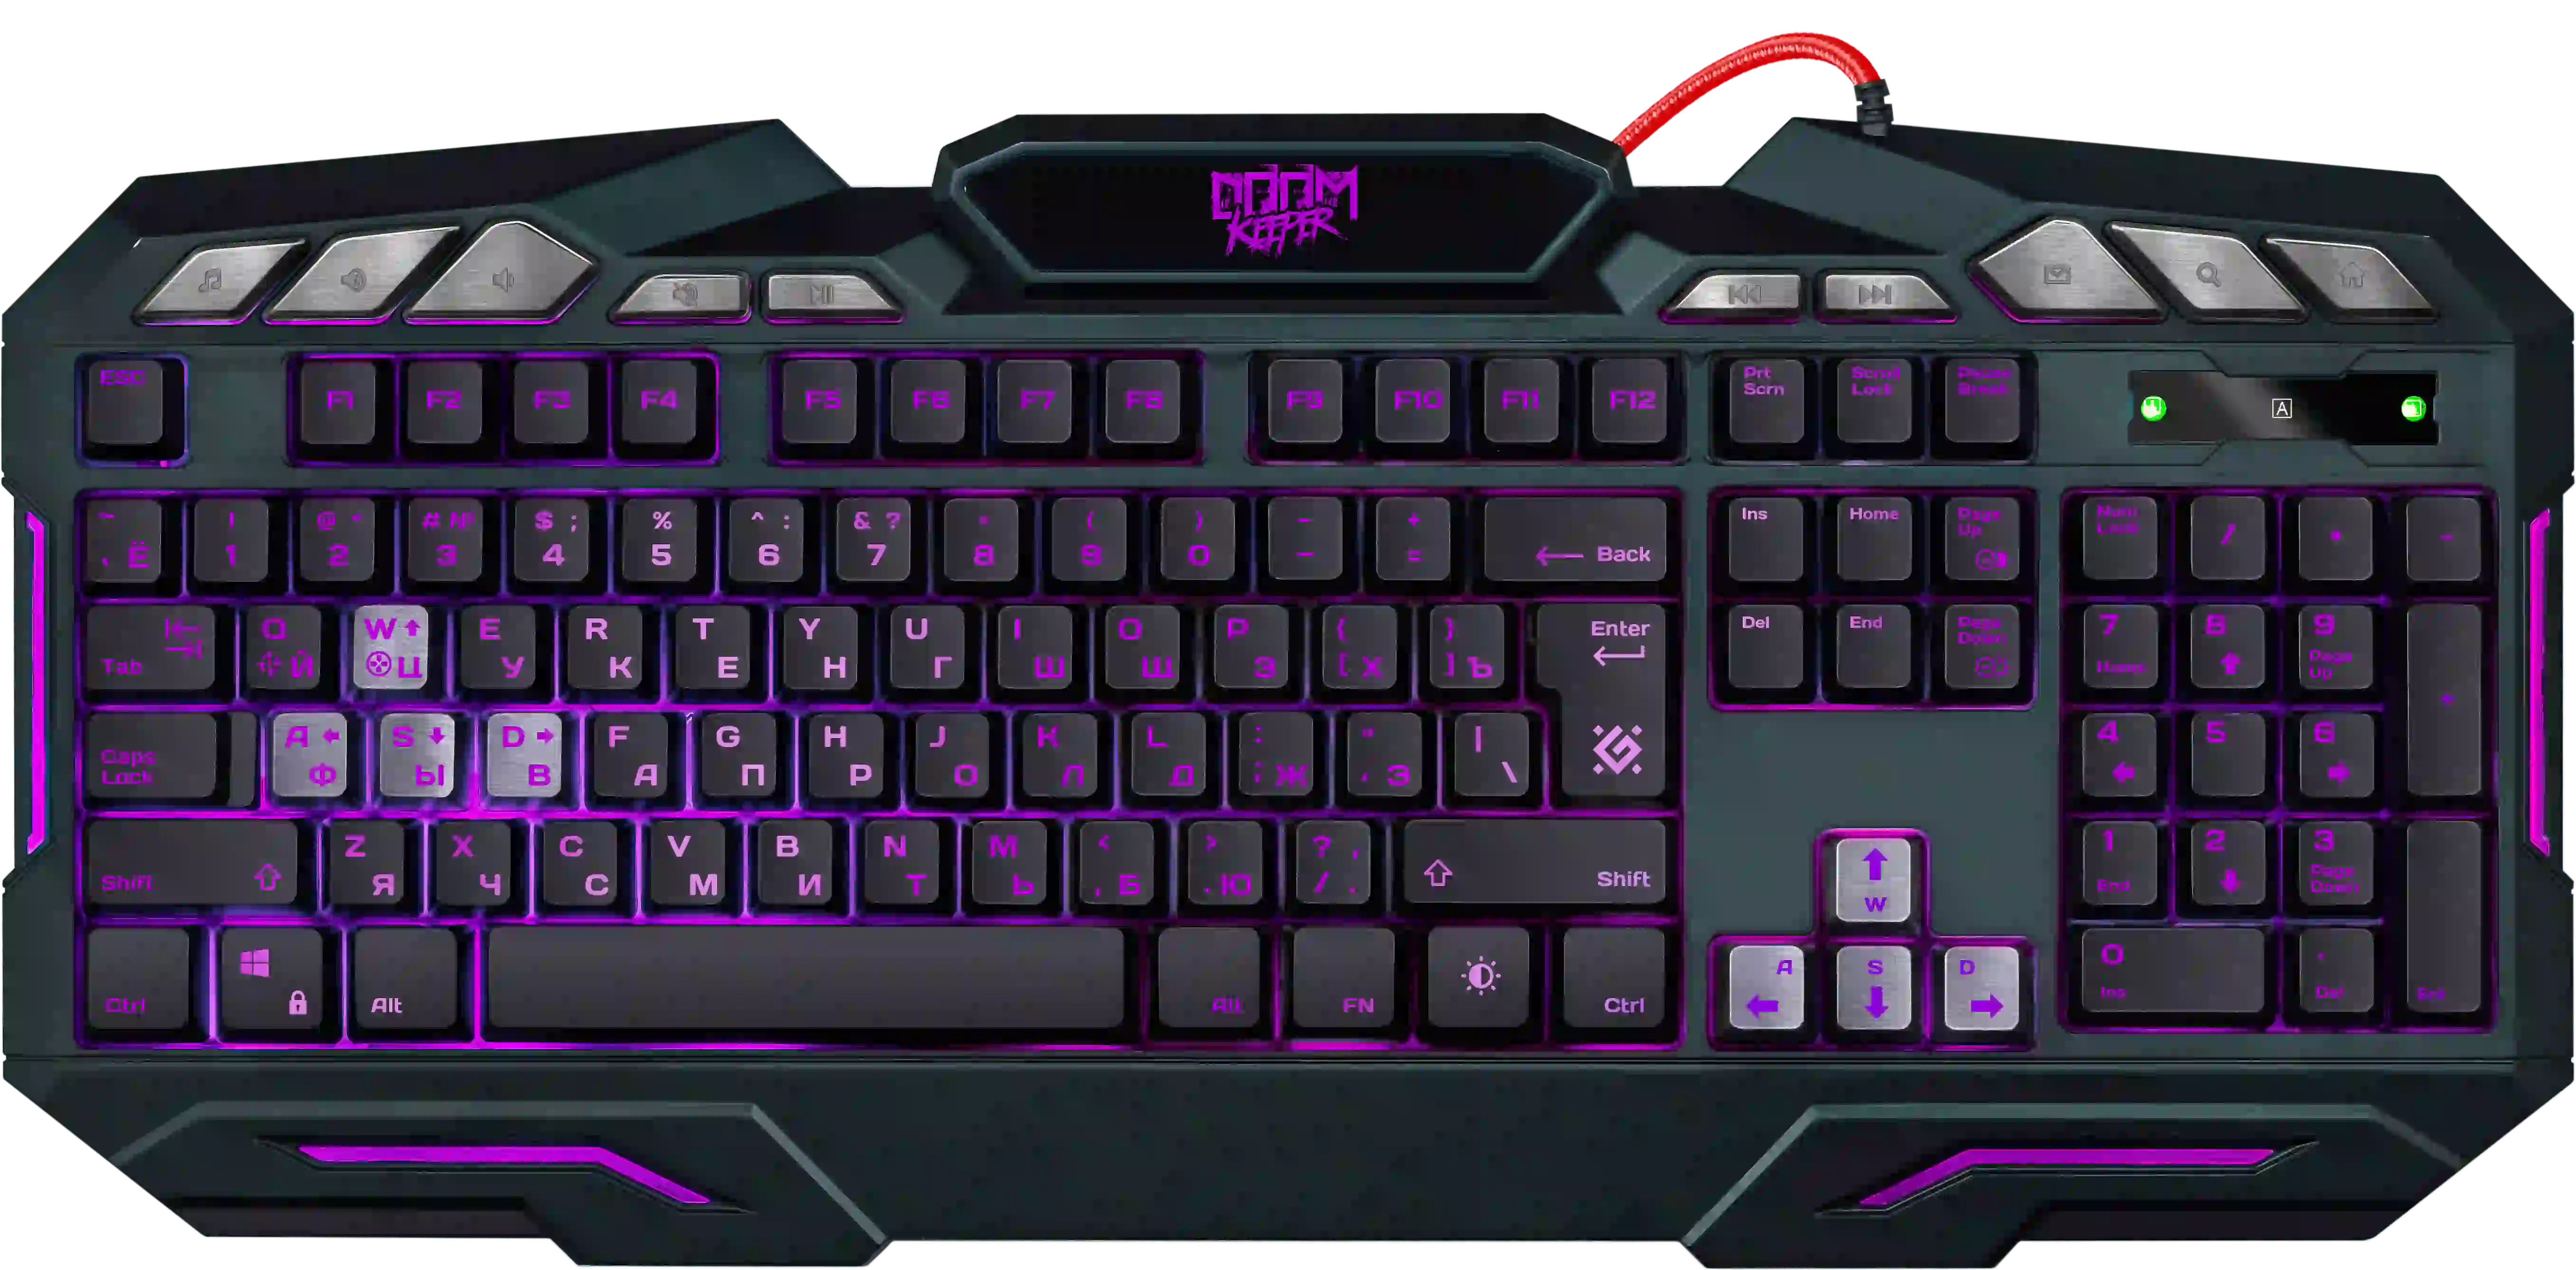 Клавиатура игровая DEFENDER Doom Keeper GK-100DL (45100)